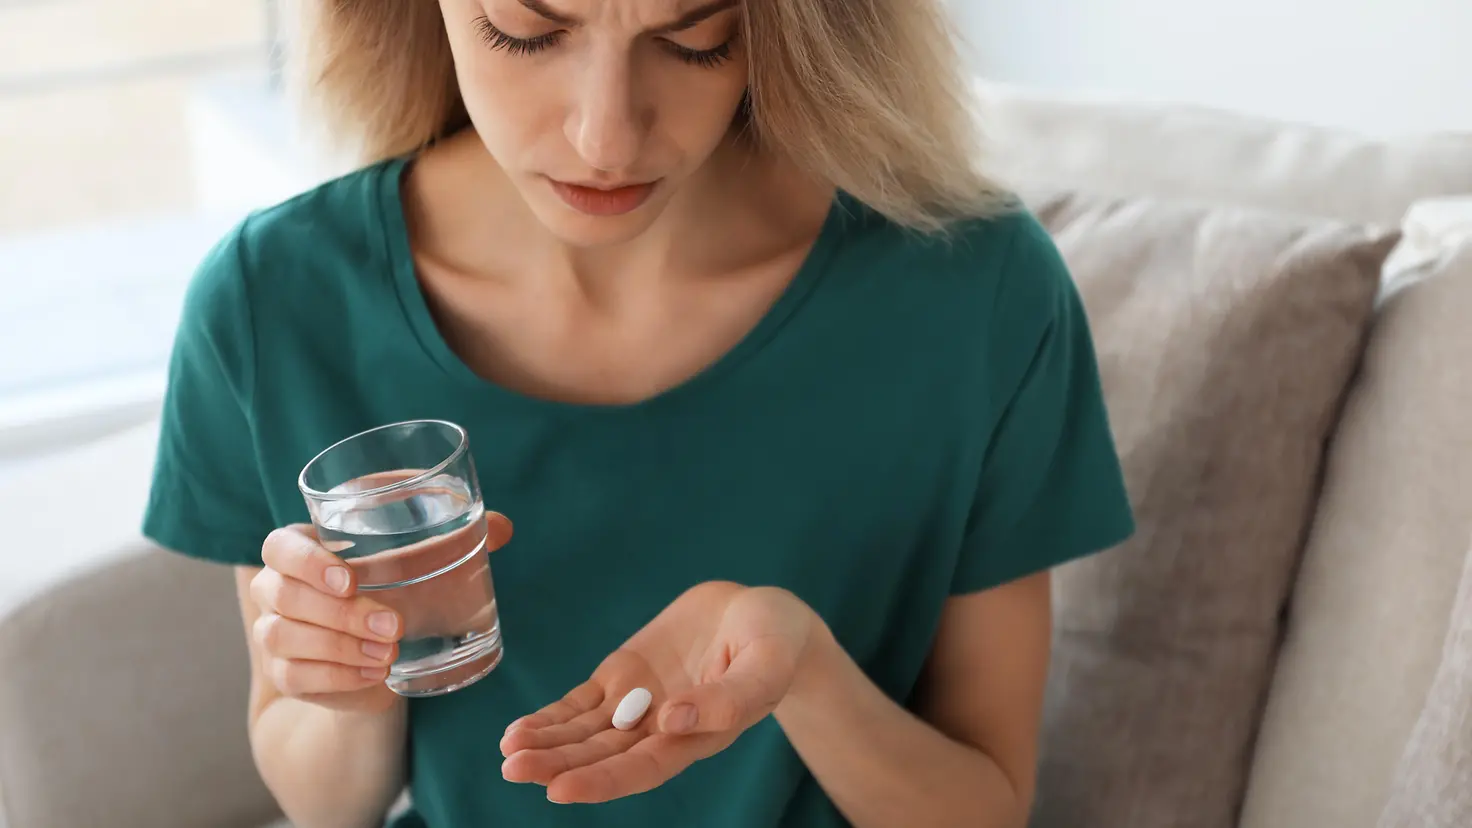 Eine Frau hält eine Tablette in einer Hand und ein Glas Wasser in der anderen.